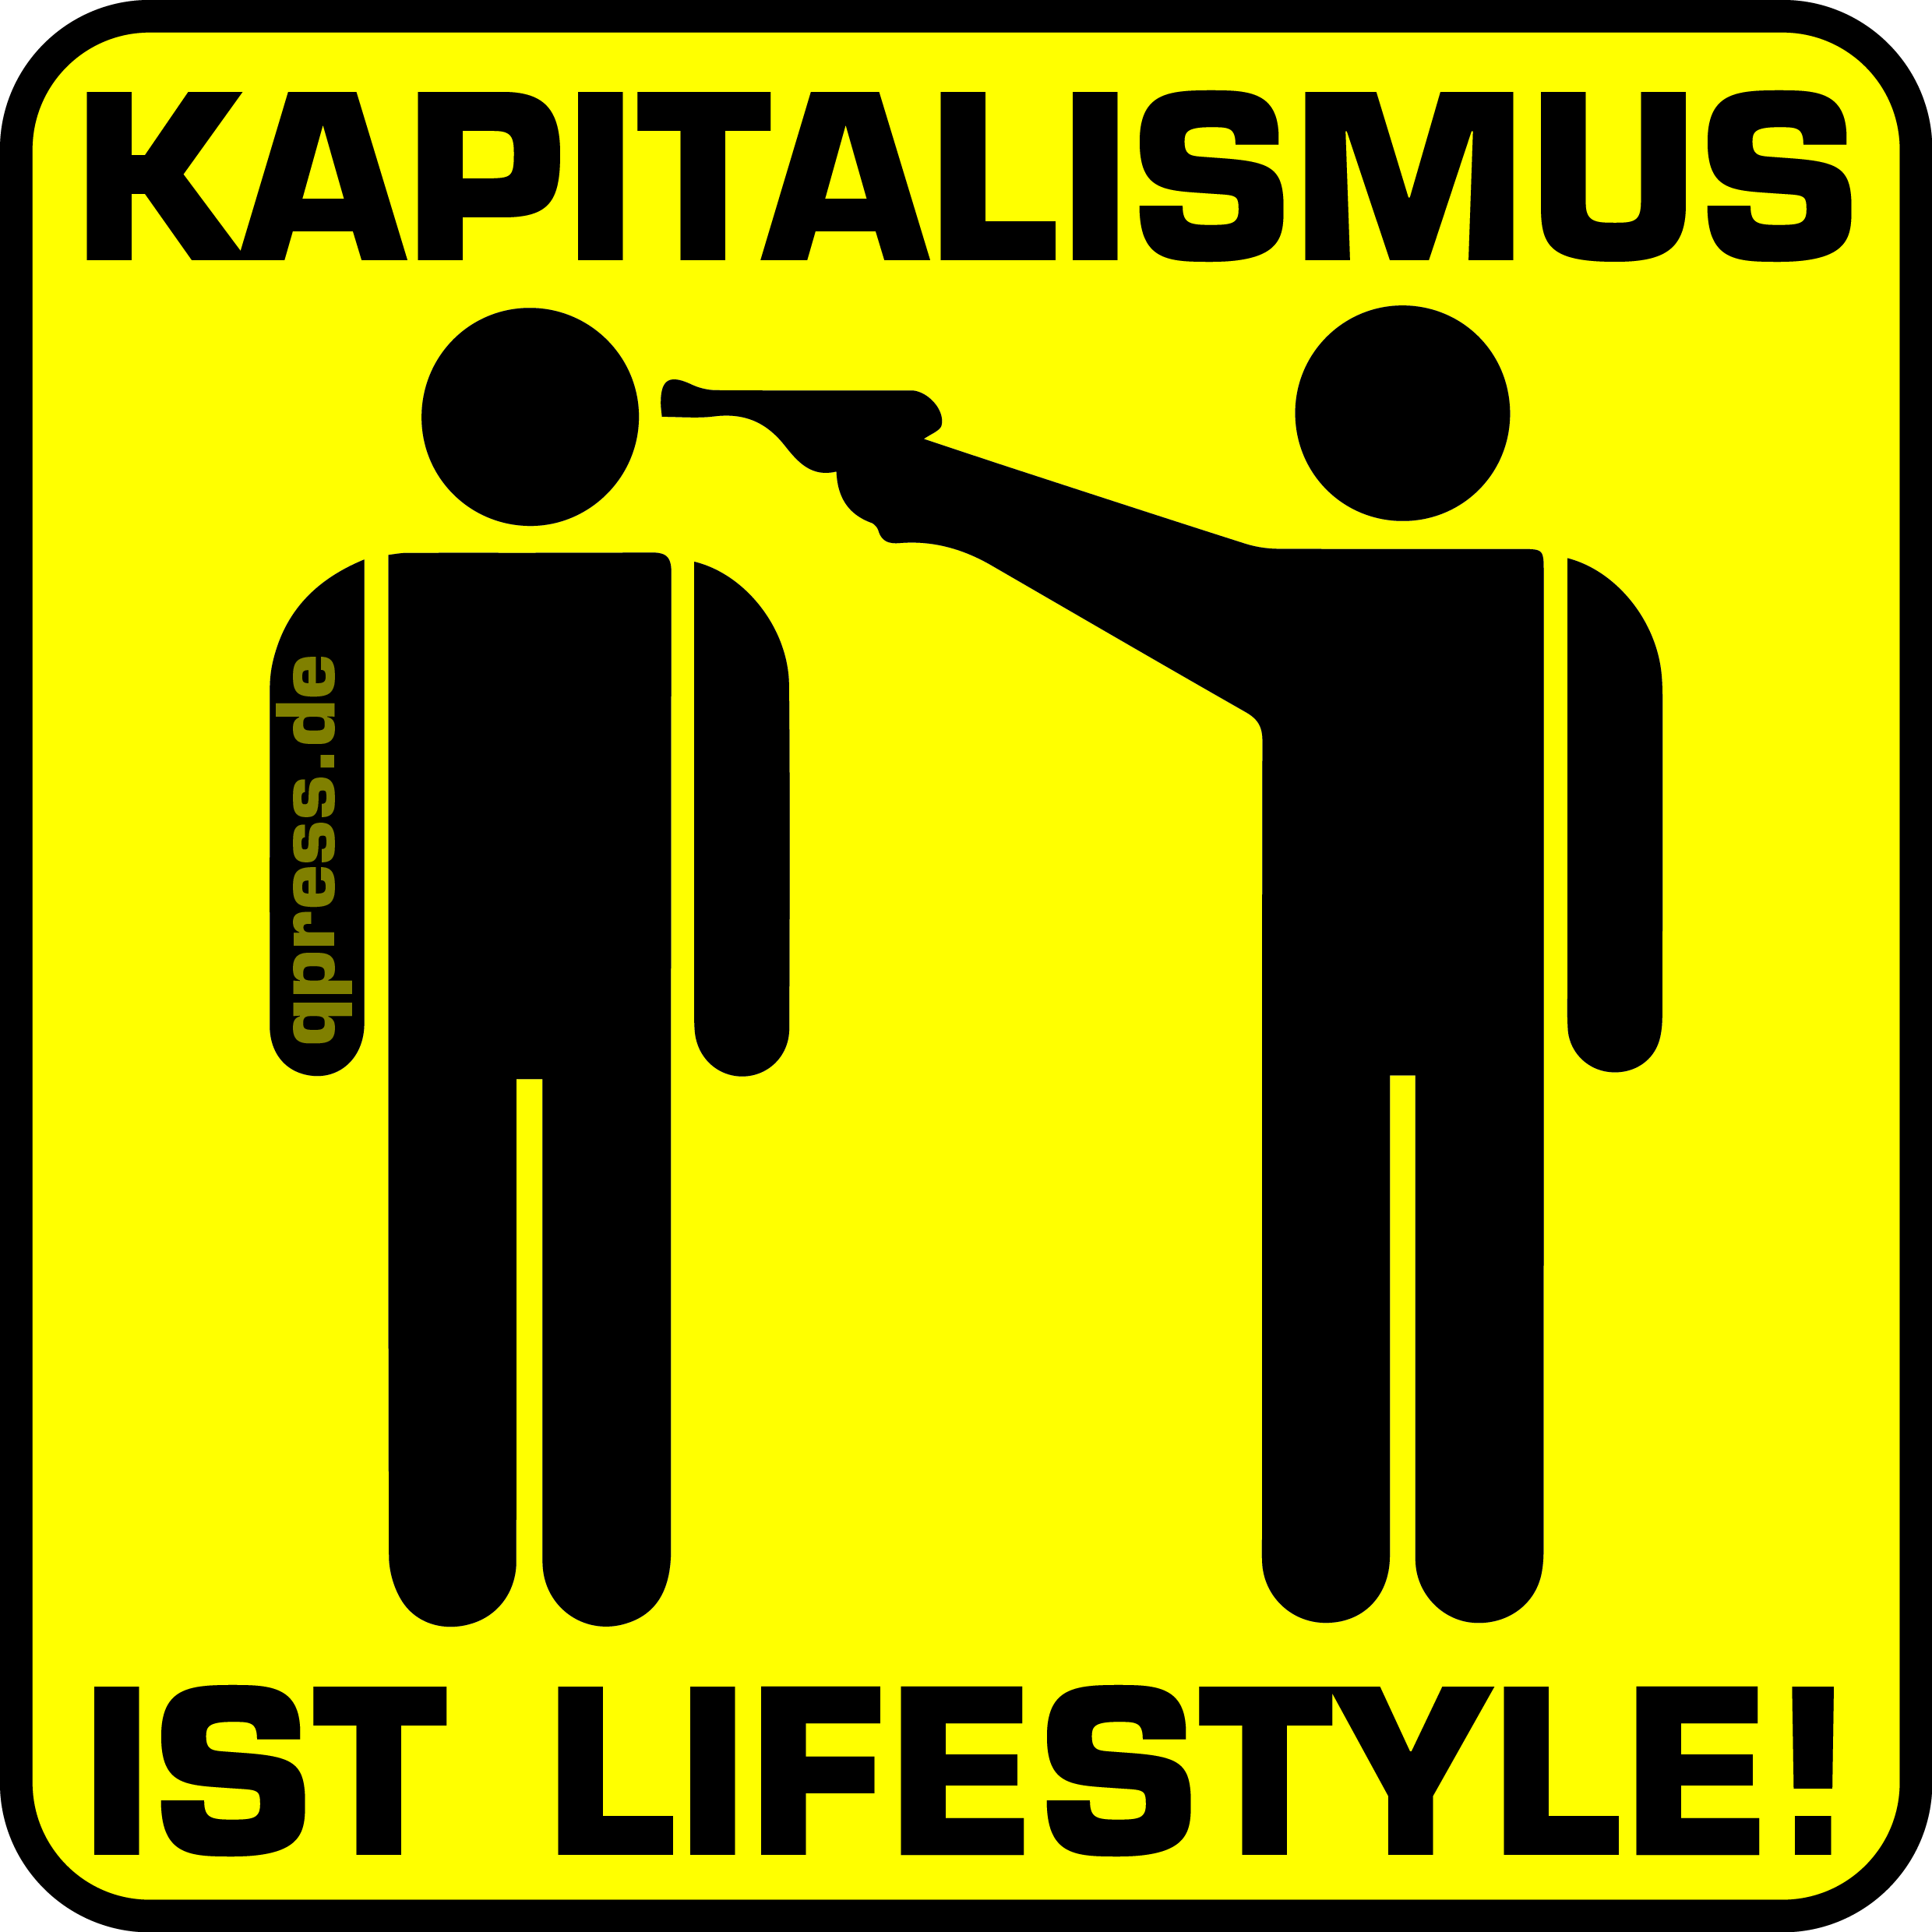 Kapitalismus ist Lifestyle toetet qpress Warnung Warnhinweis falsches System